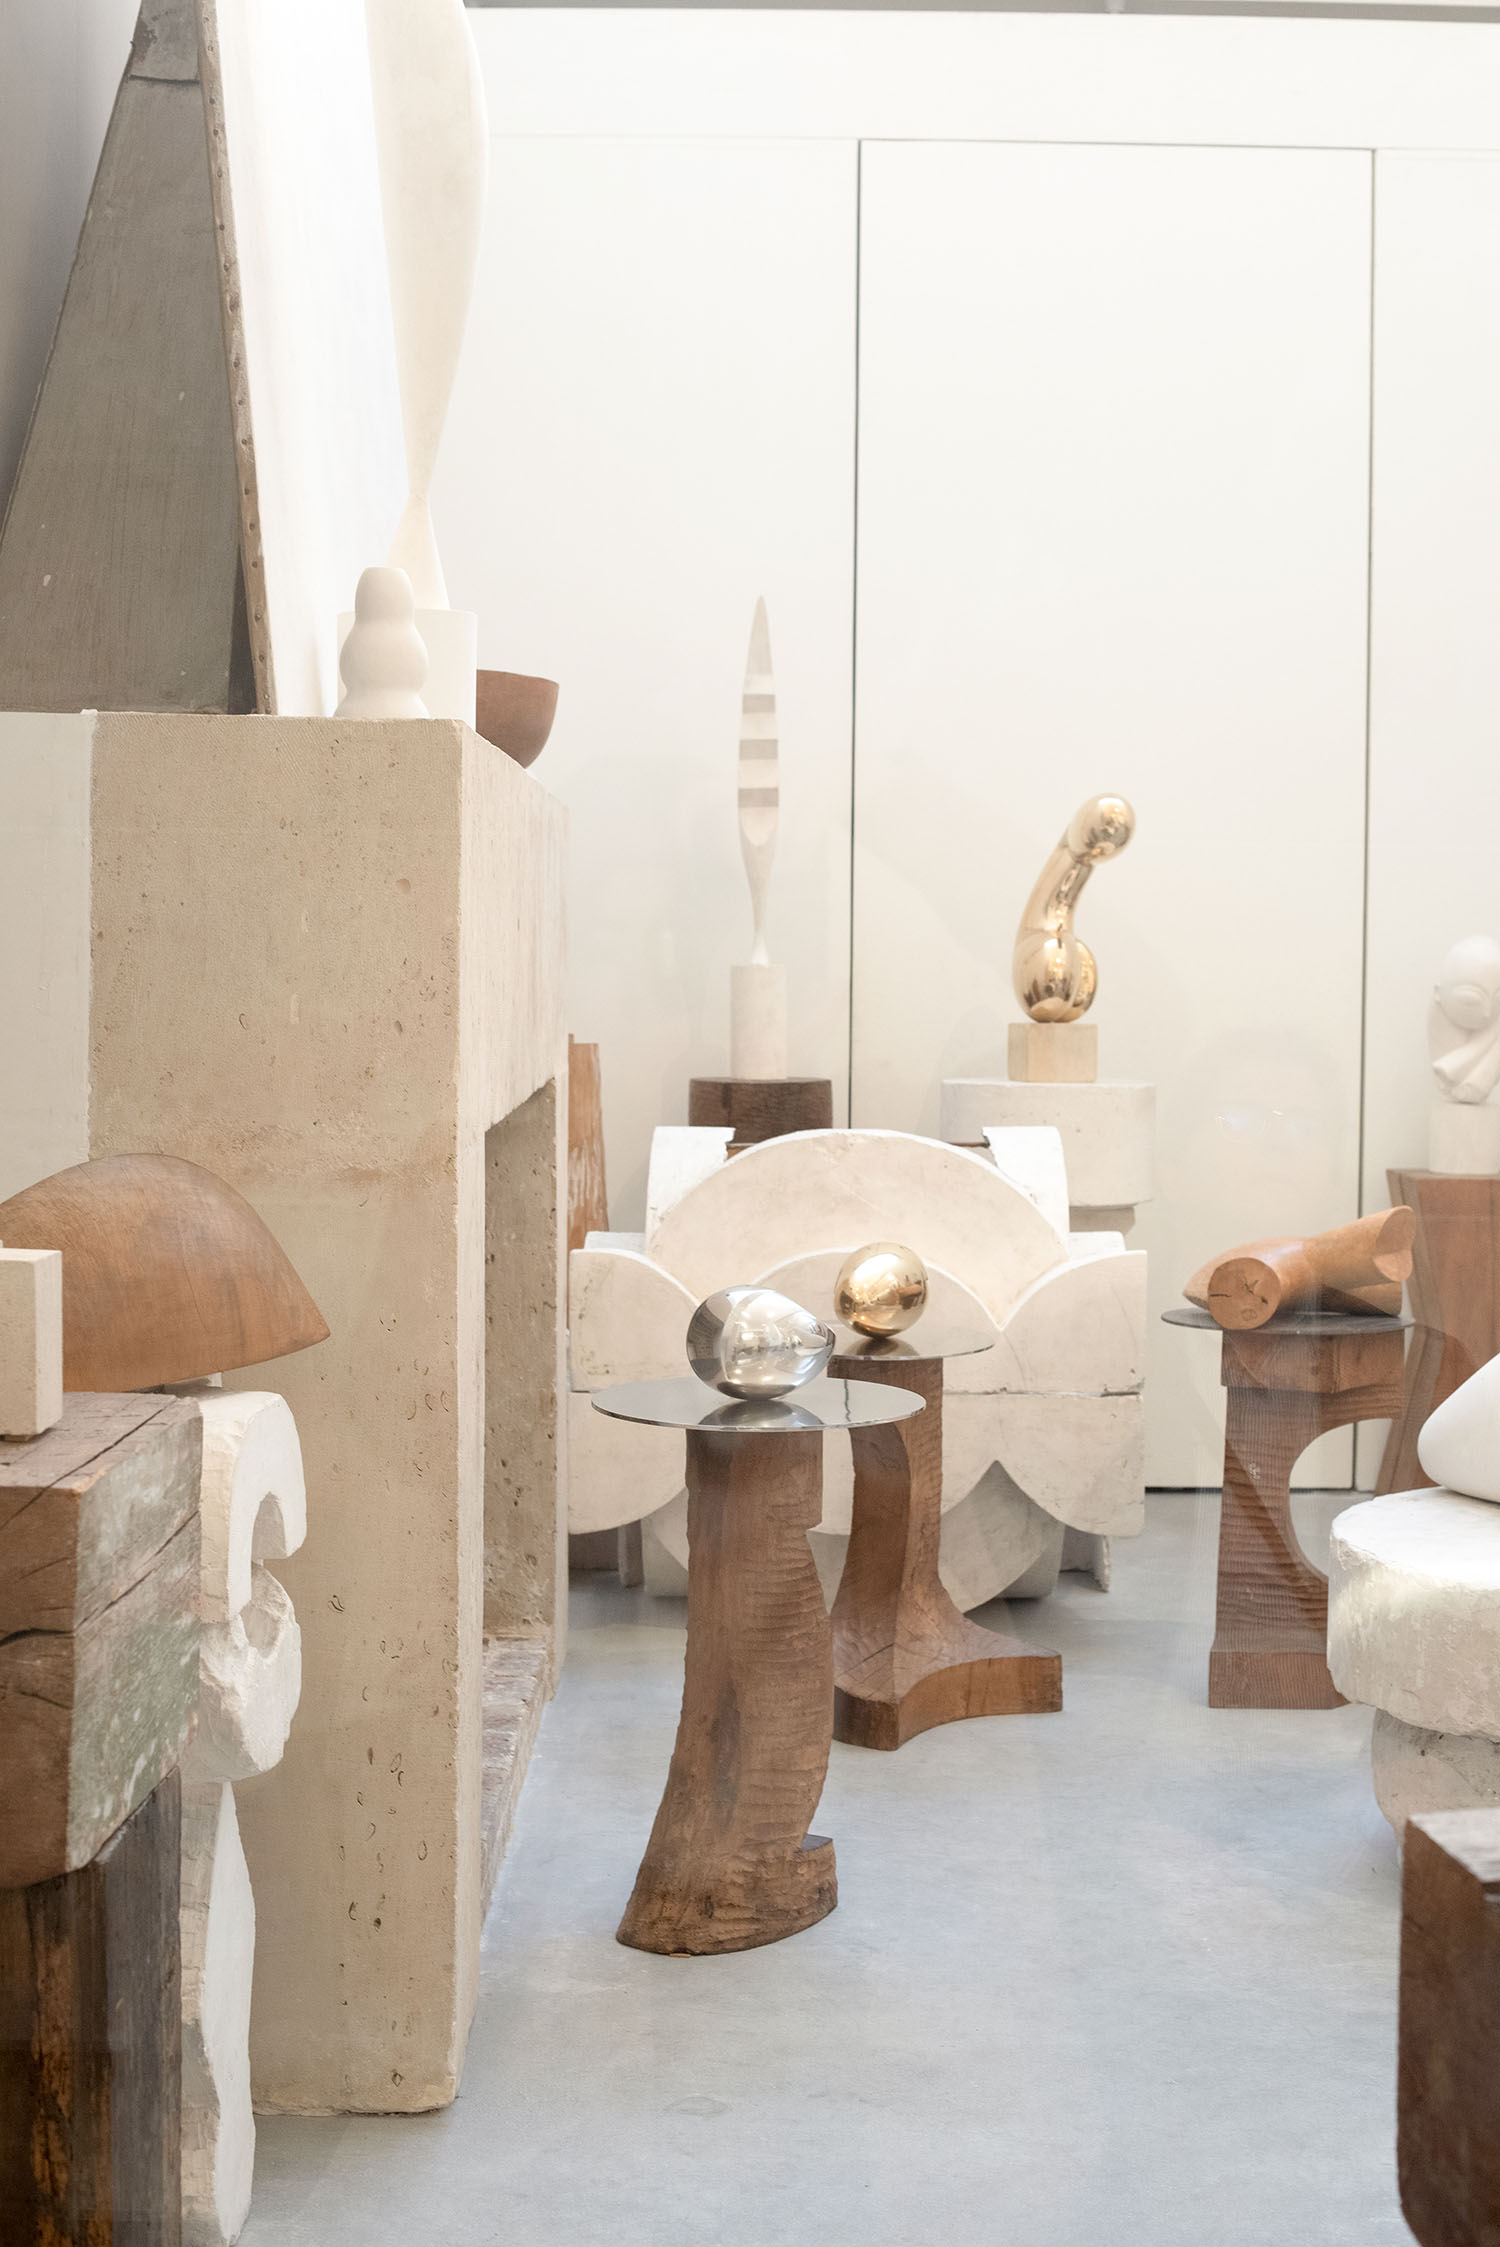 Coco & Vera - Sculptures at Atelier Brancusi in Paris